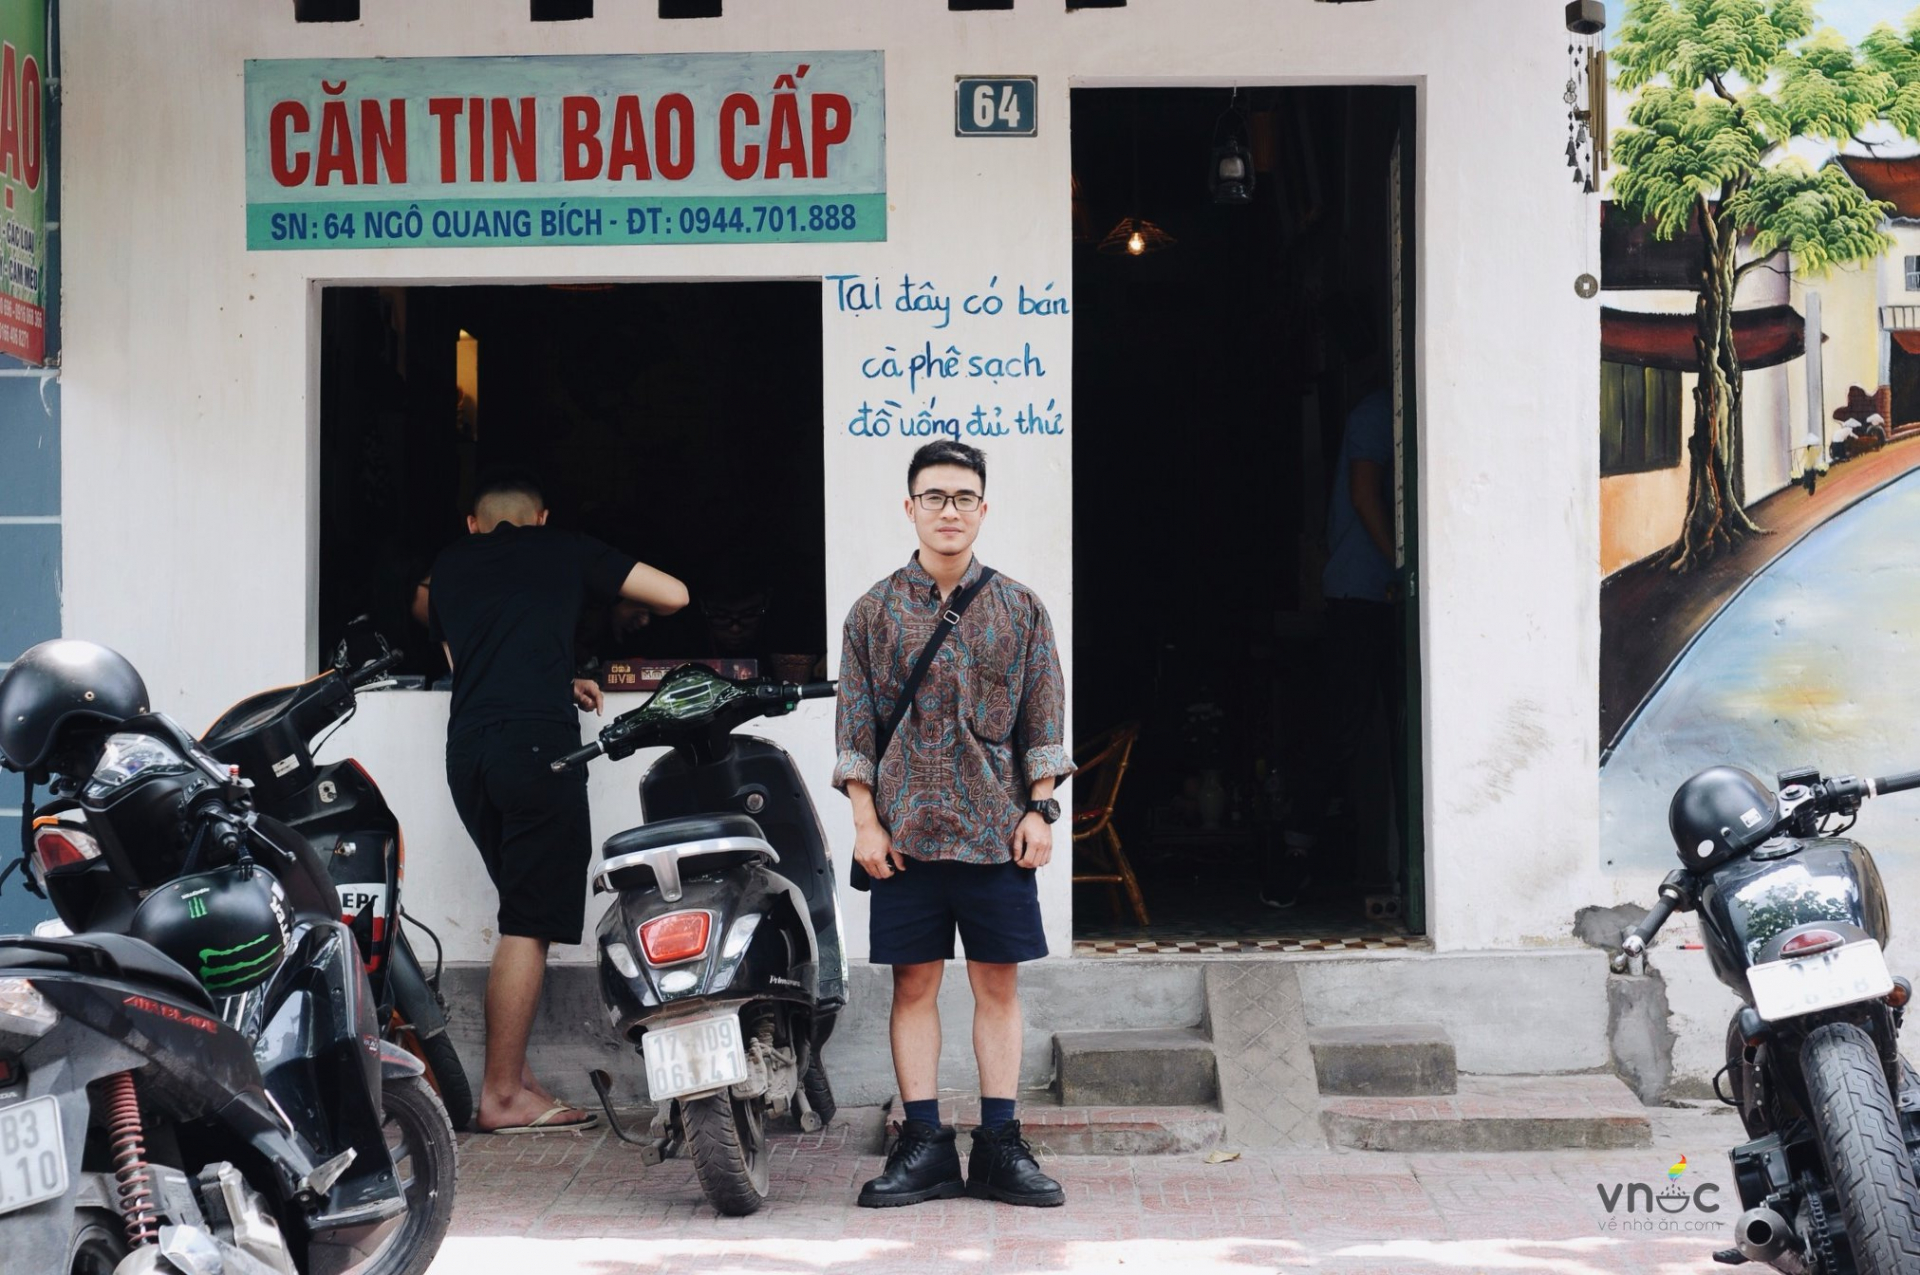 Chàng trai chuyển giới Thái Bình: 'Mình không sợ bố đánh, chỉ sợ nhất là bố mẹ đau lòng' 0